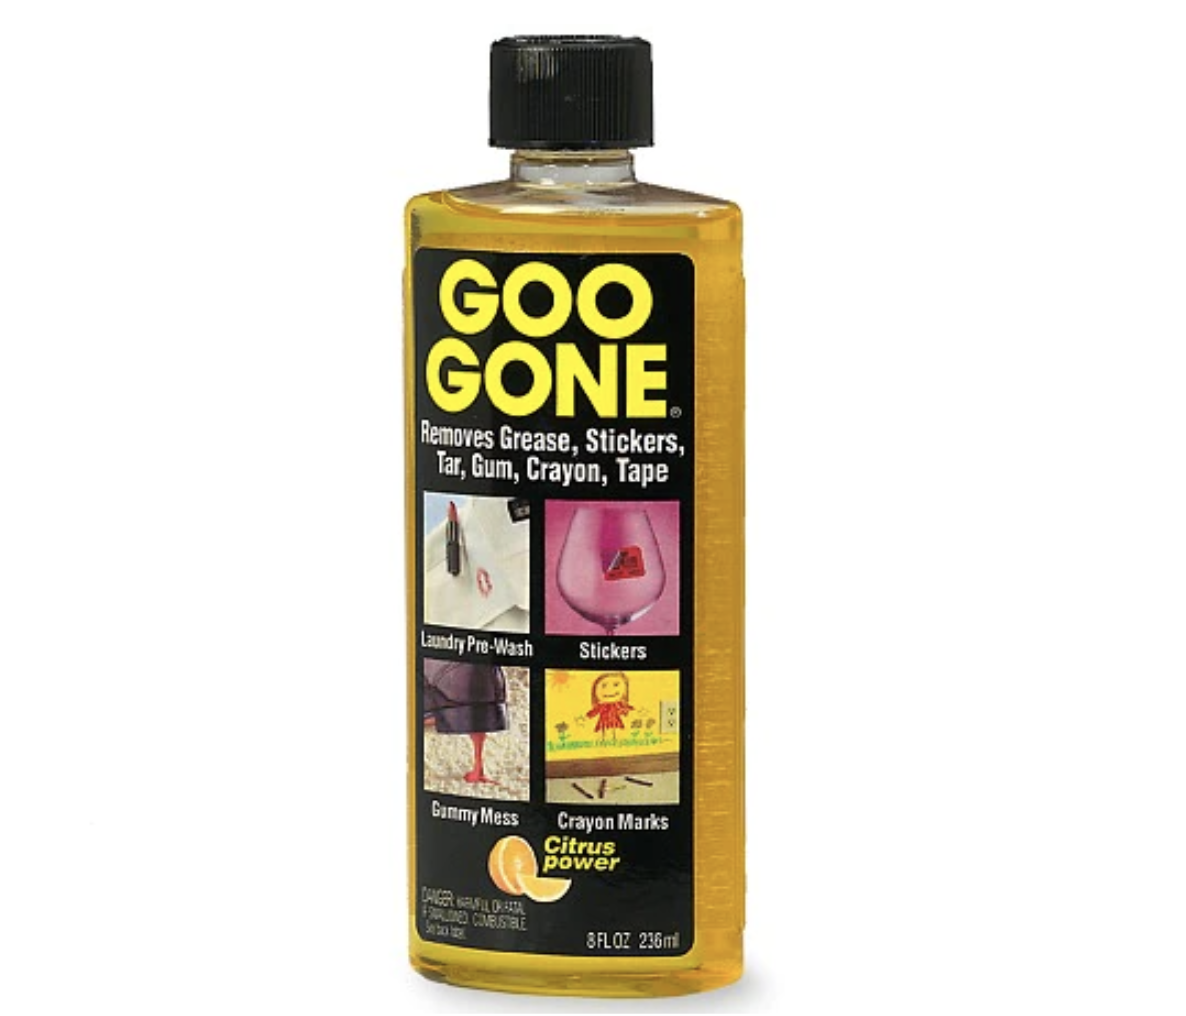 a bottle of goo gone